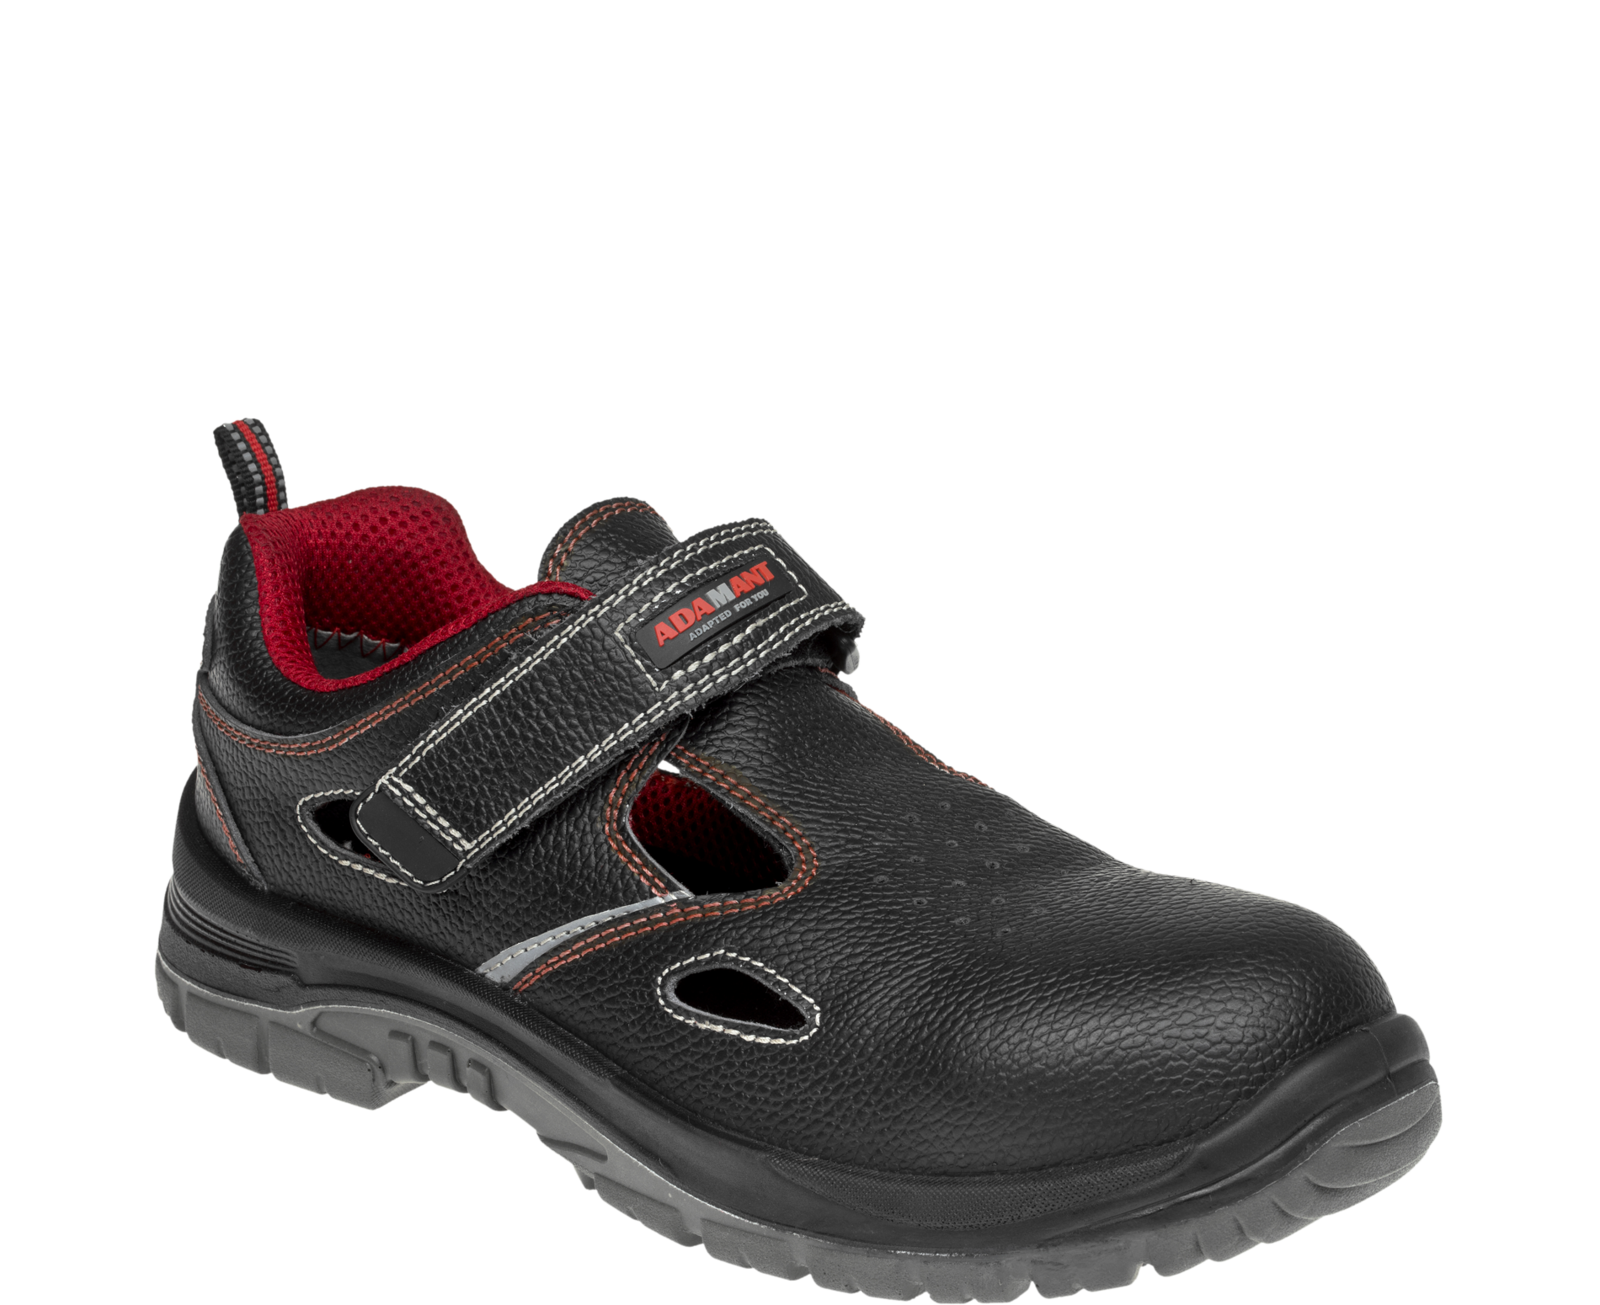 Bezpečnostné sandále Adamant Non Metallic S1 SRC - veľkosť: 37, farba: čierna/červená